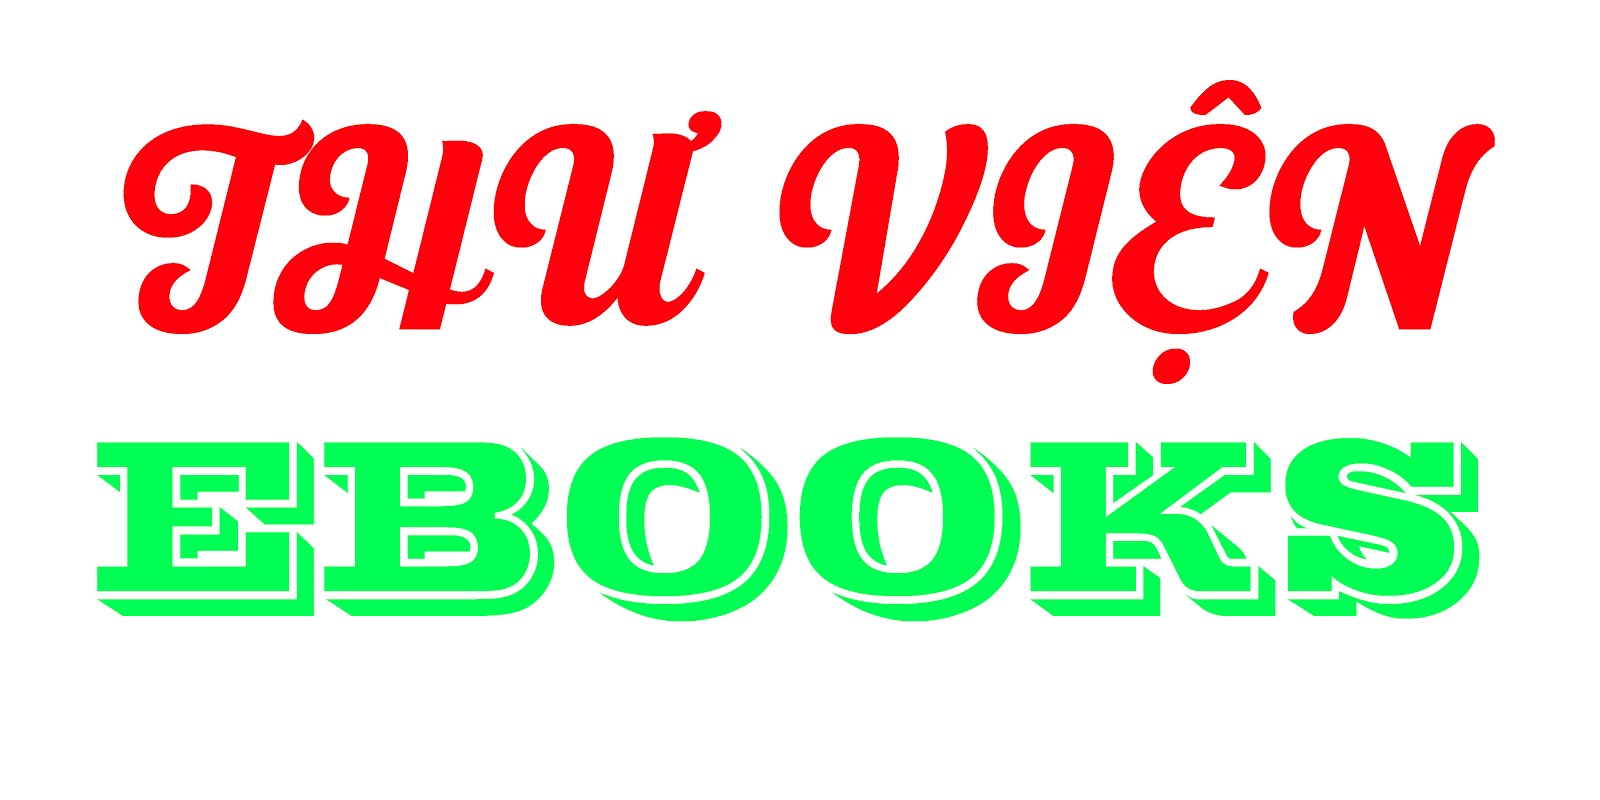 Kho ebooks tiếng Việt chia sẻ miễn phí